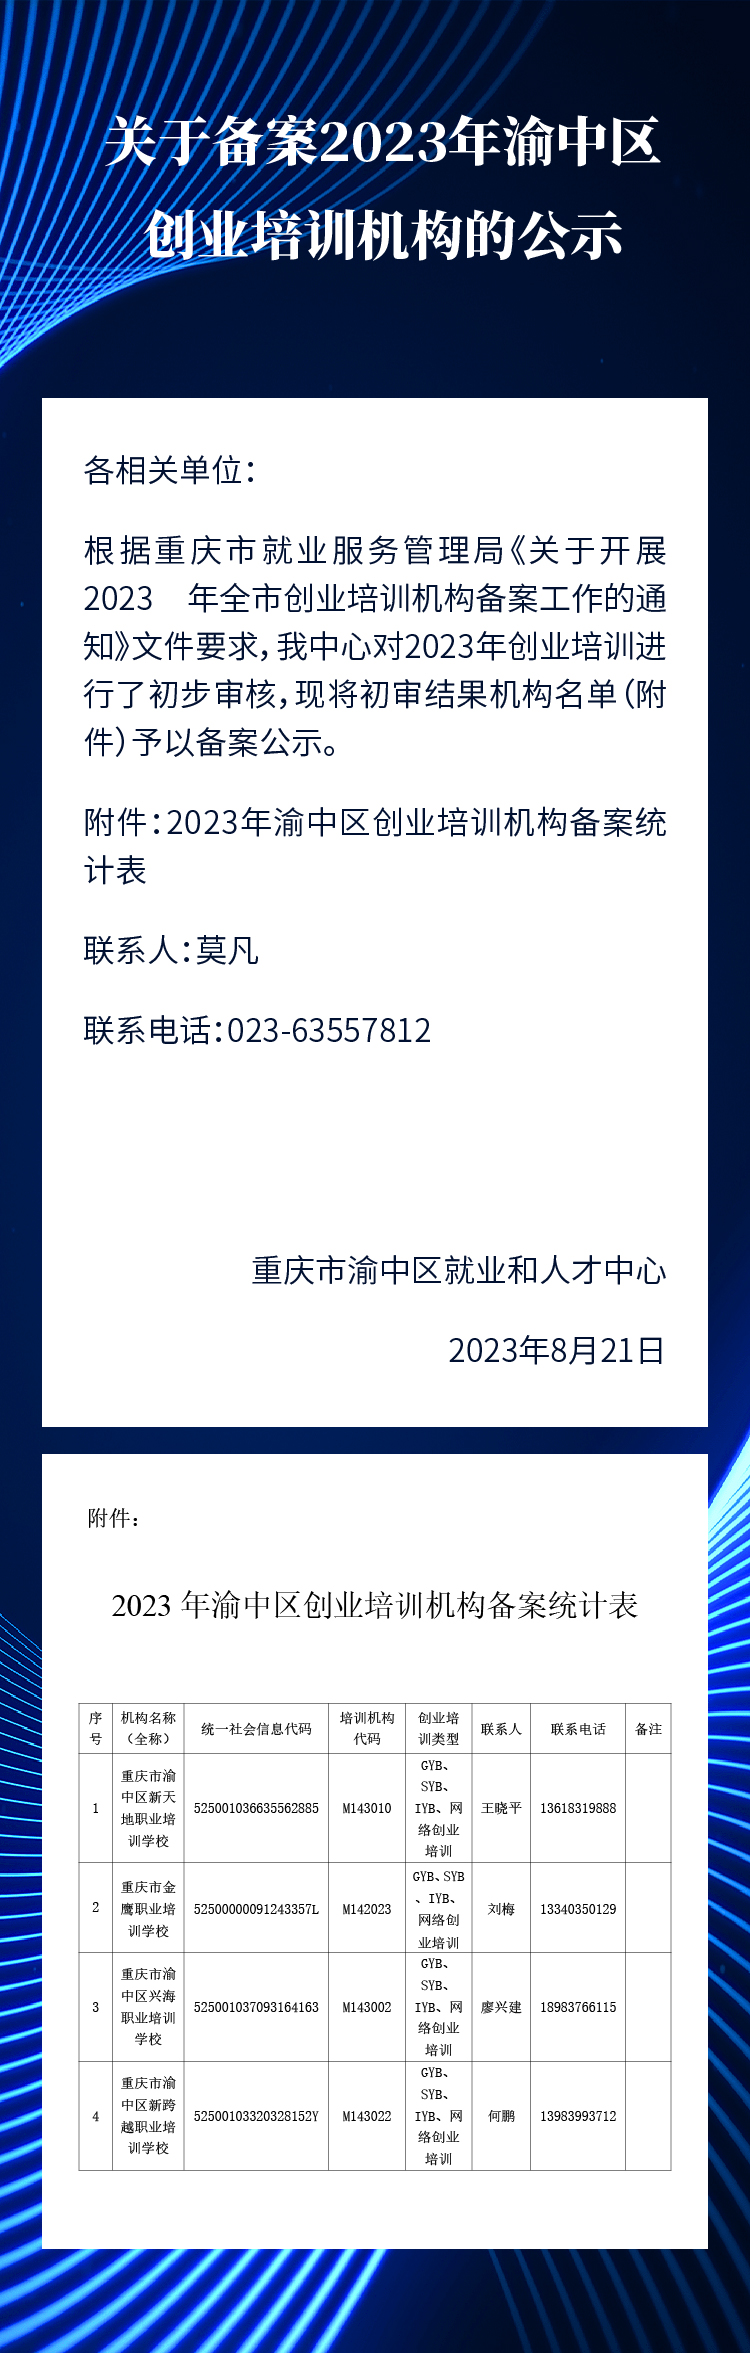 关于备案2023年渝中区创业培训机构的公示_画板 1.jpg